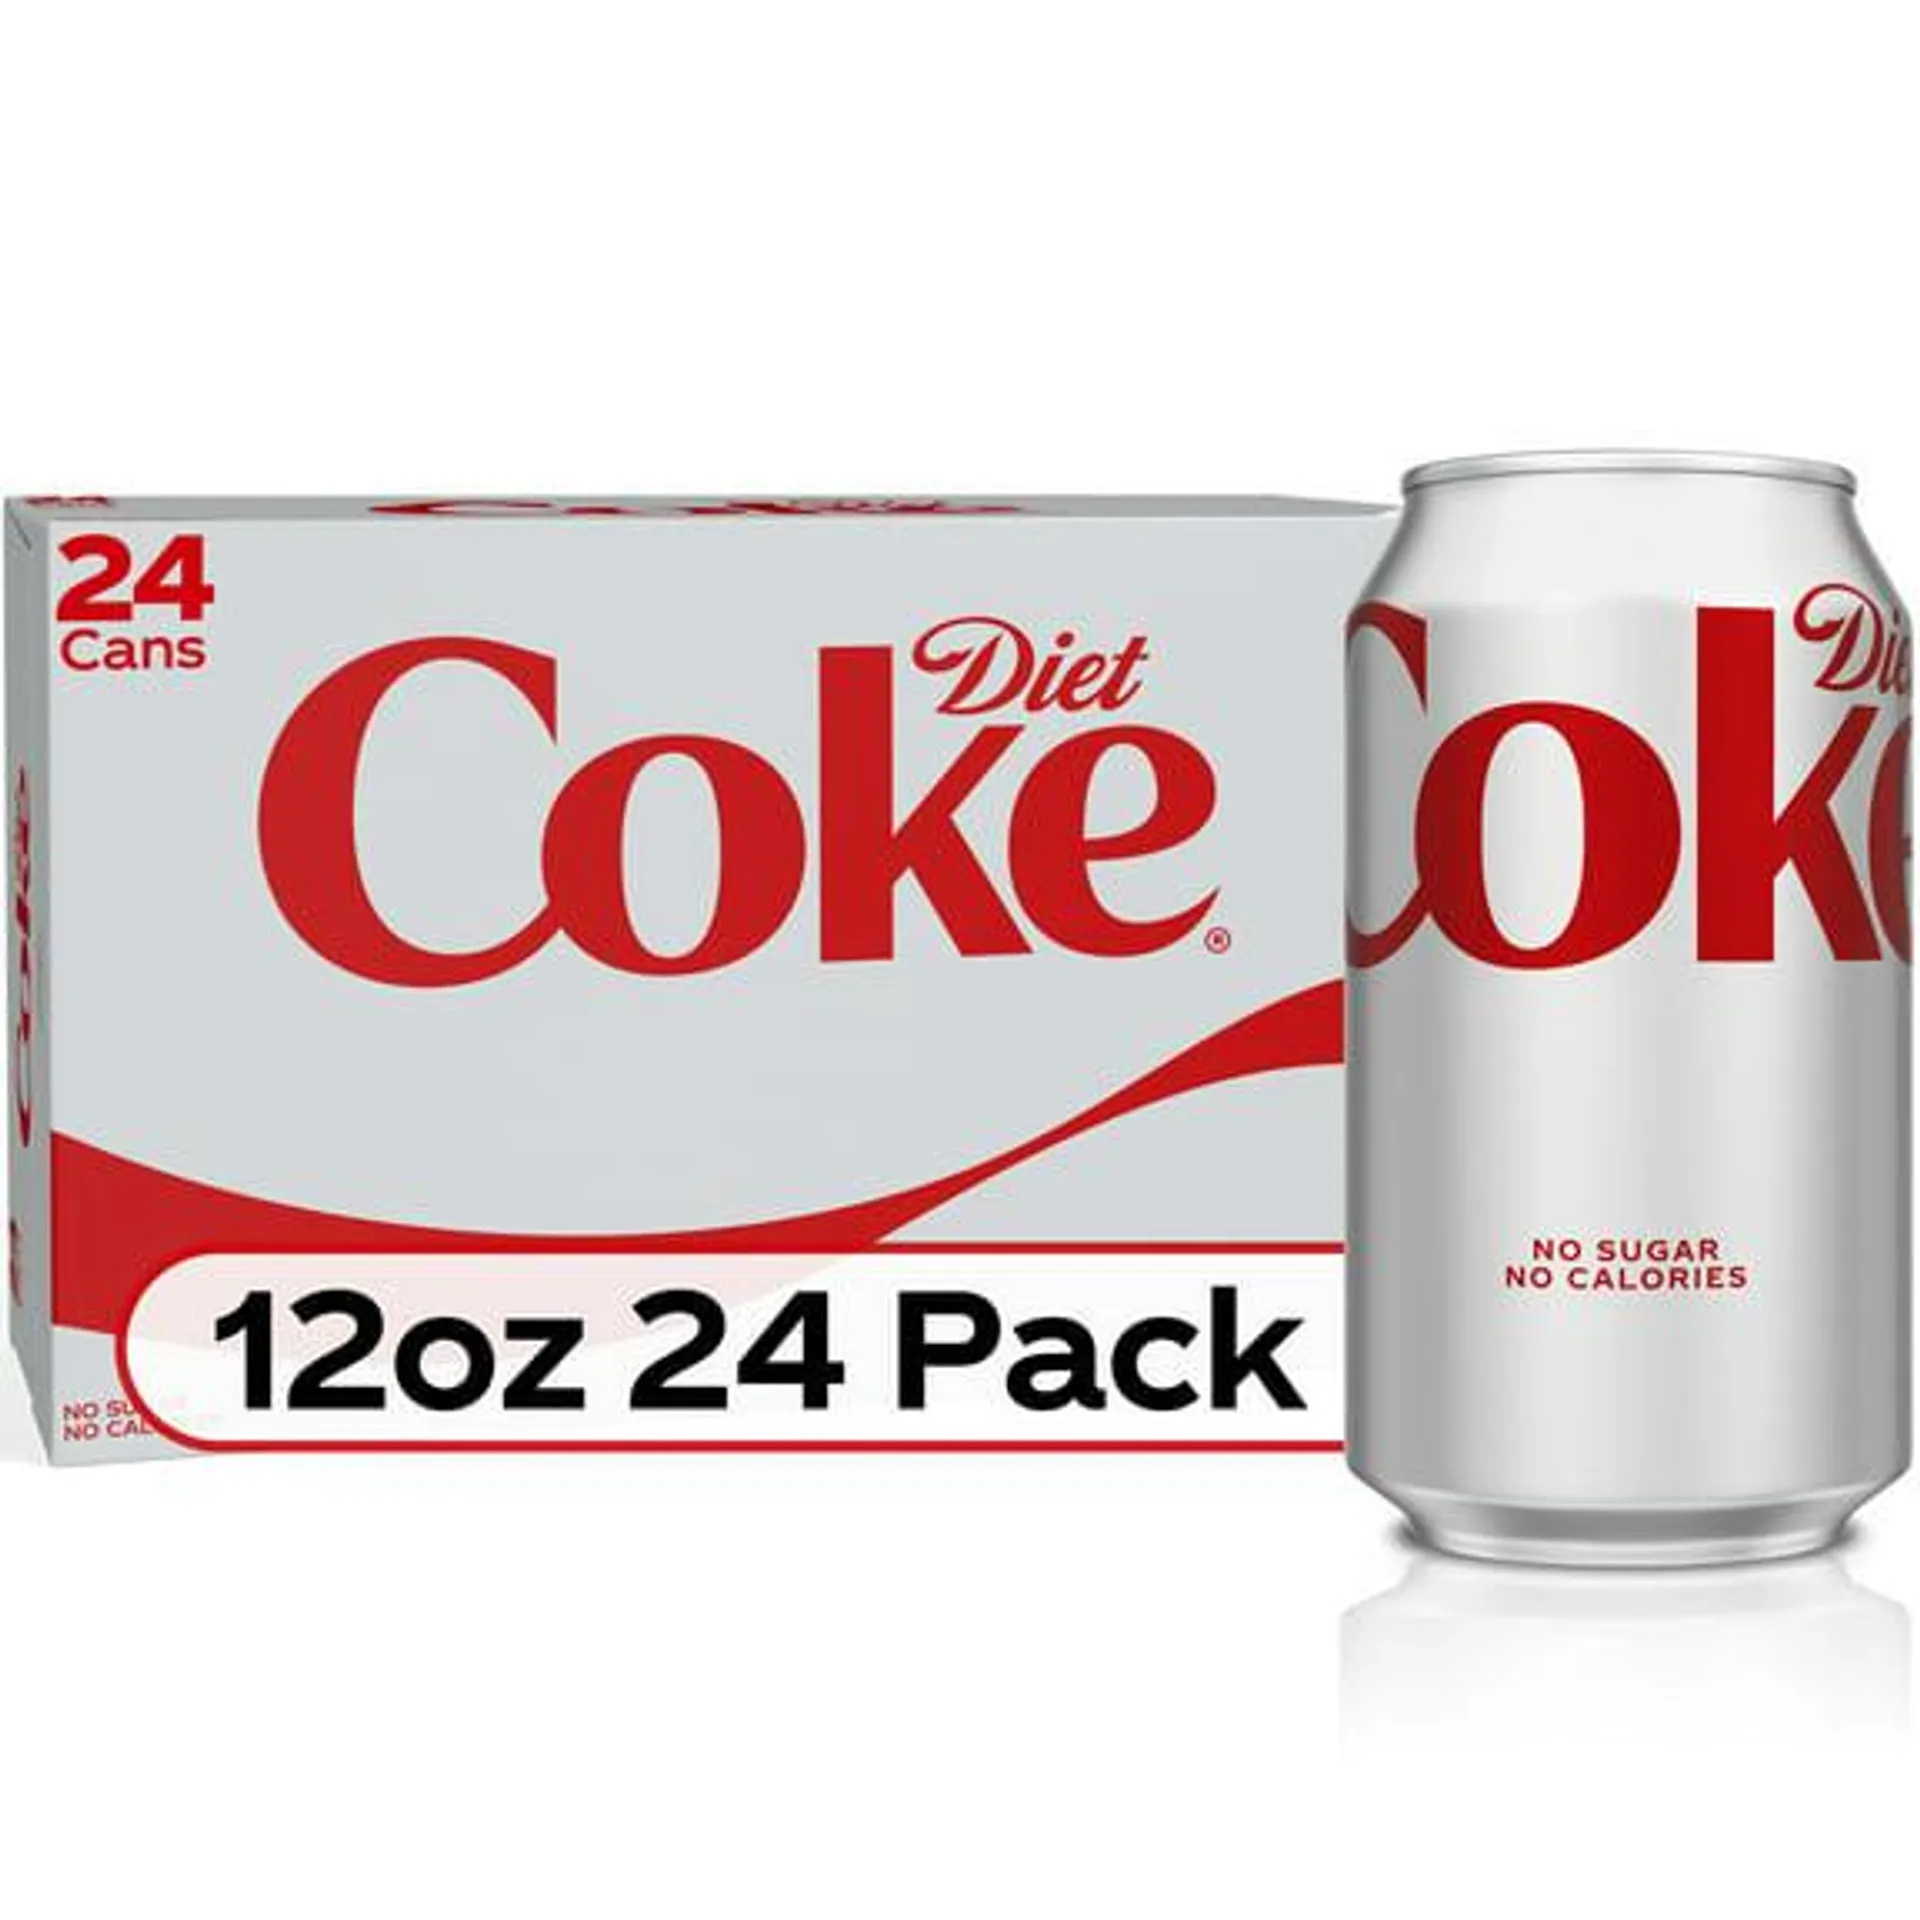 Diet Coke Soda Pop, 12 fl oz, 24 Pack Cans